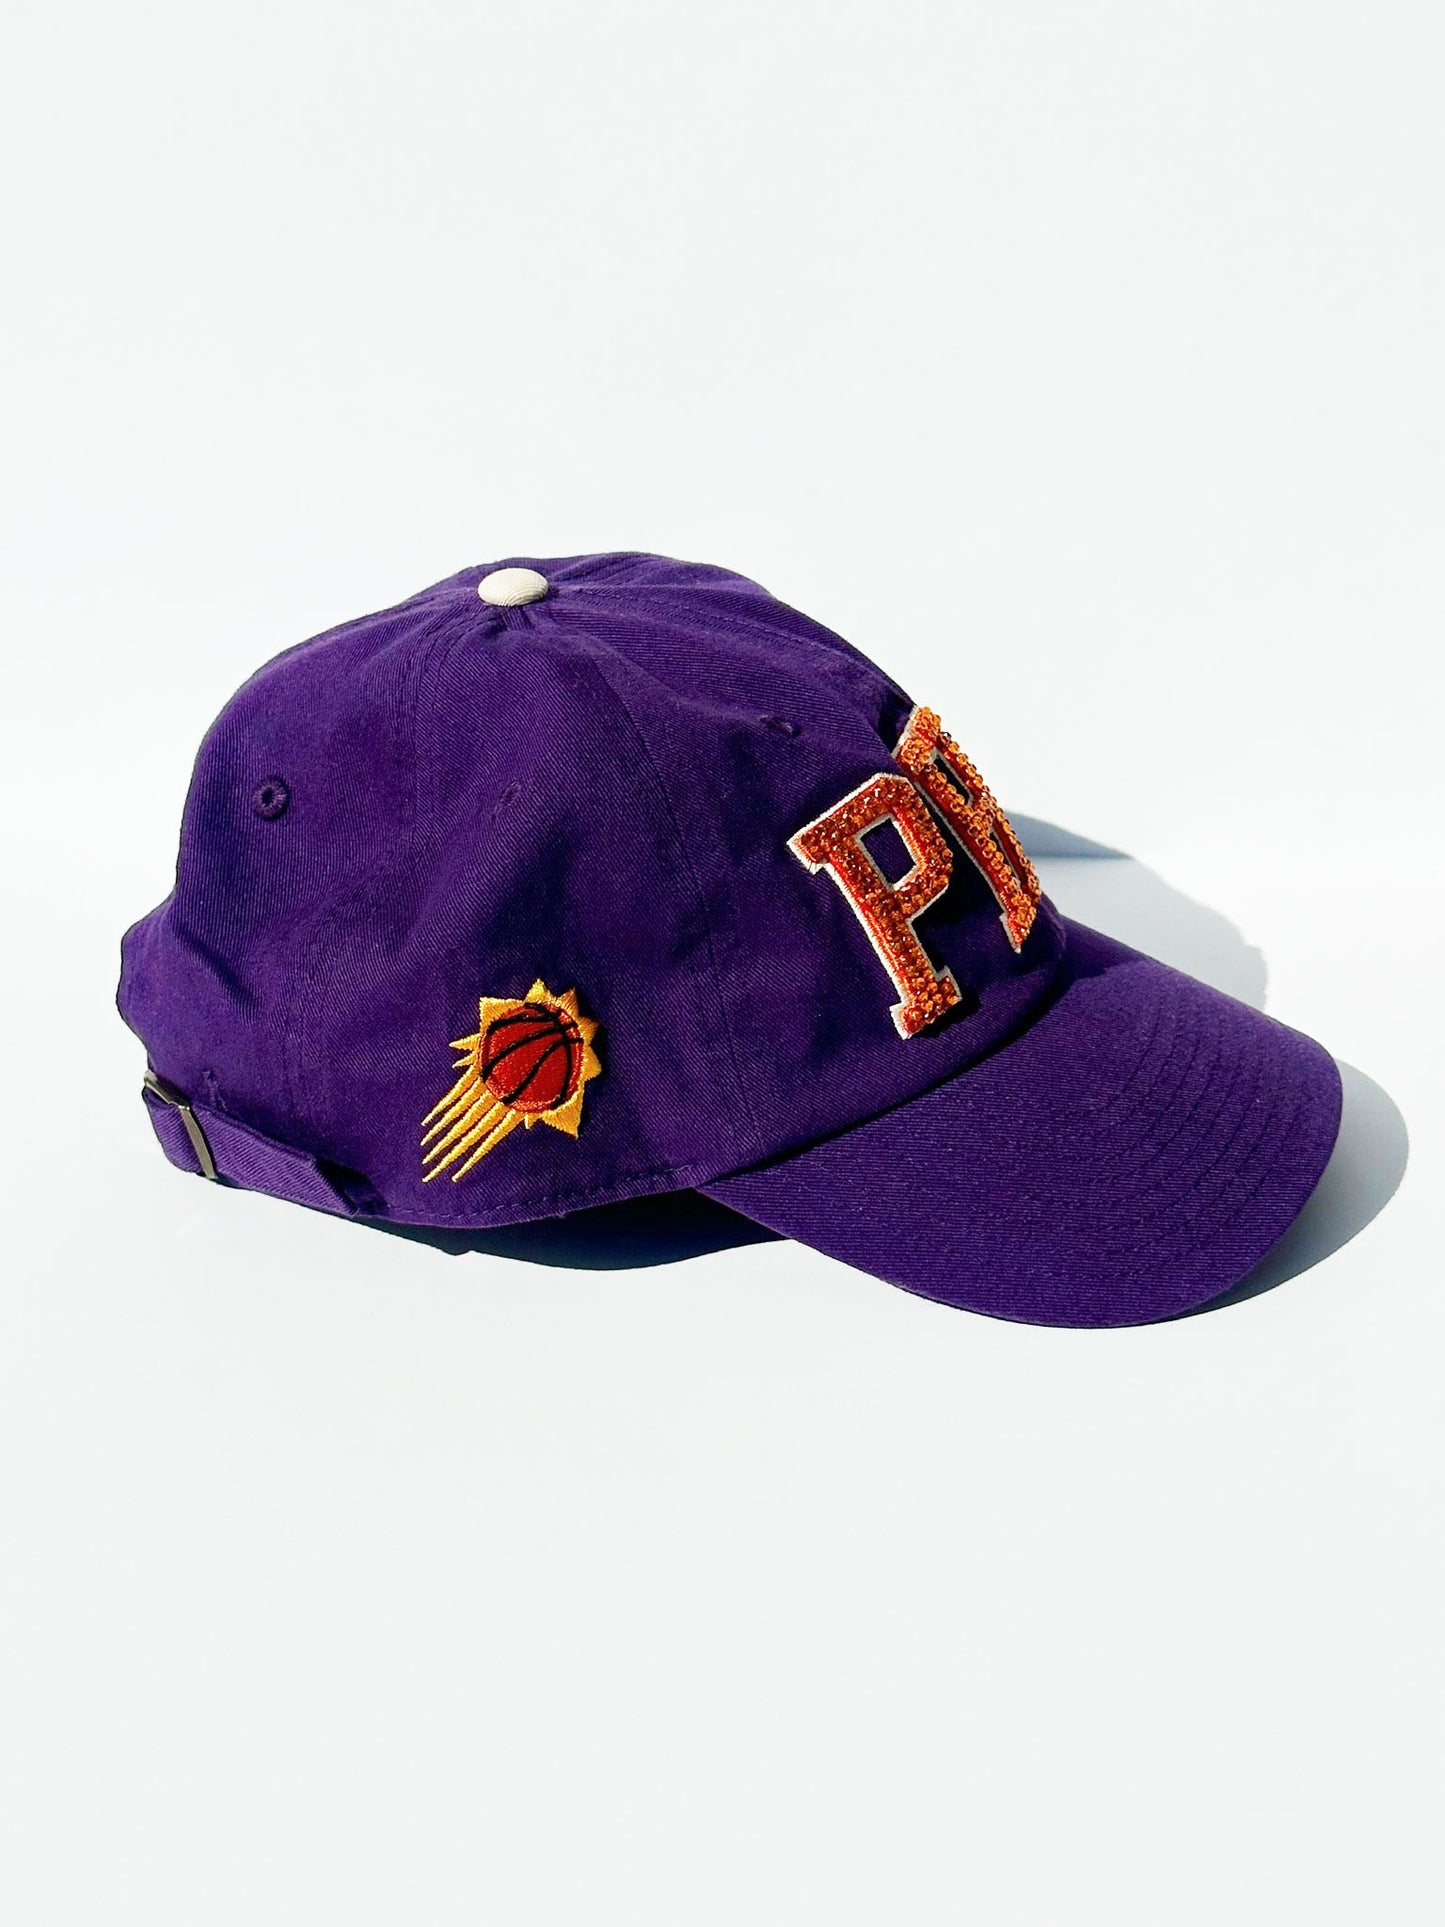 PHX Suns Bling Baseball Hat